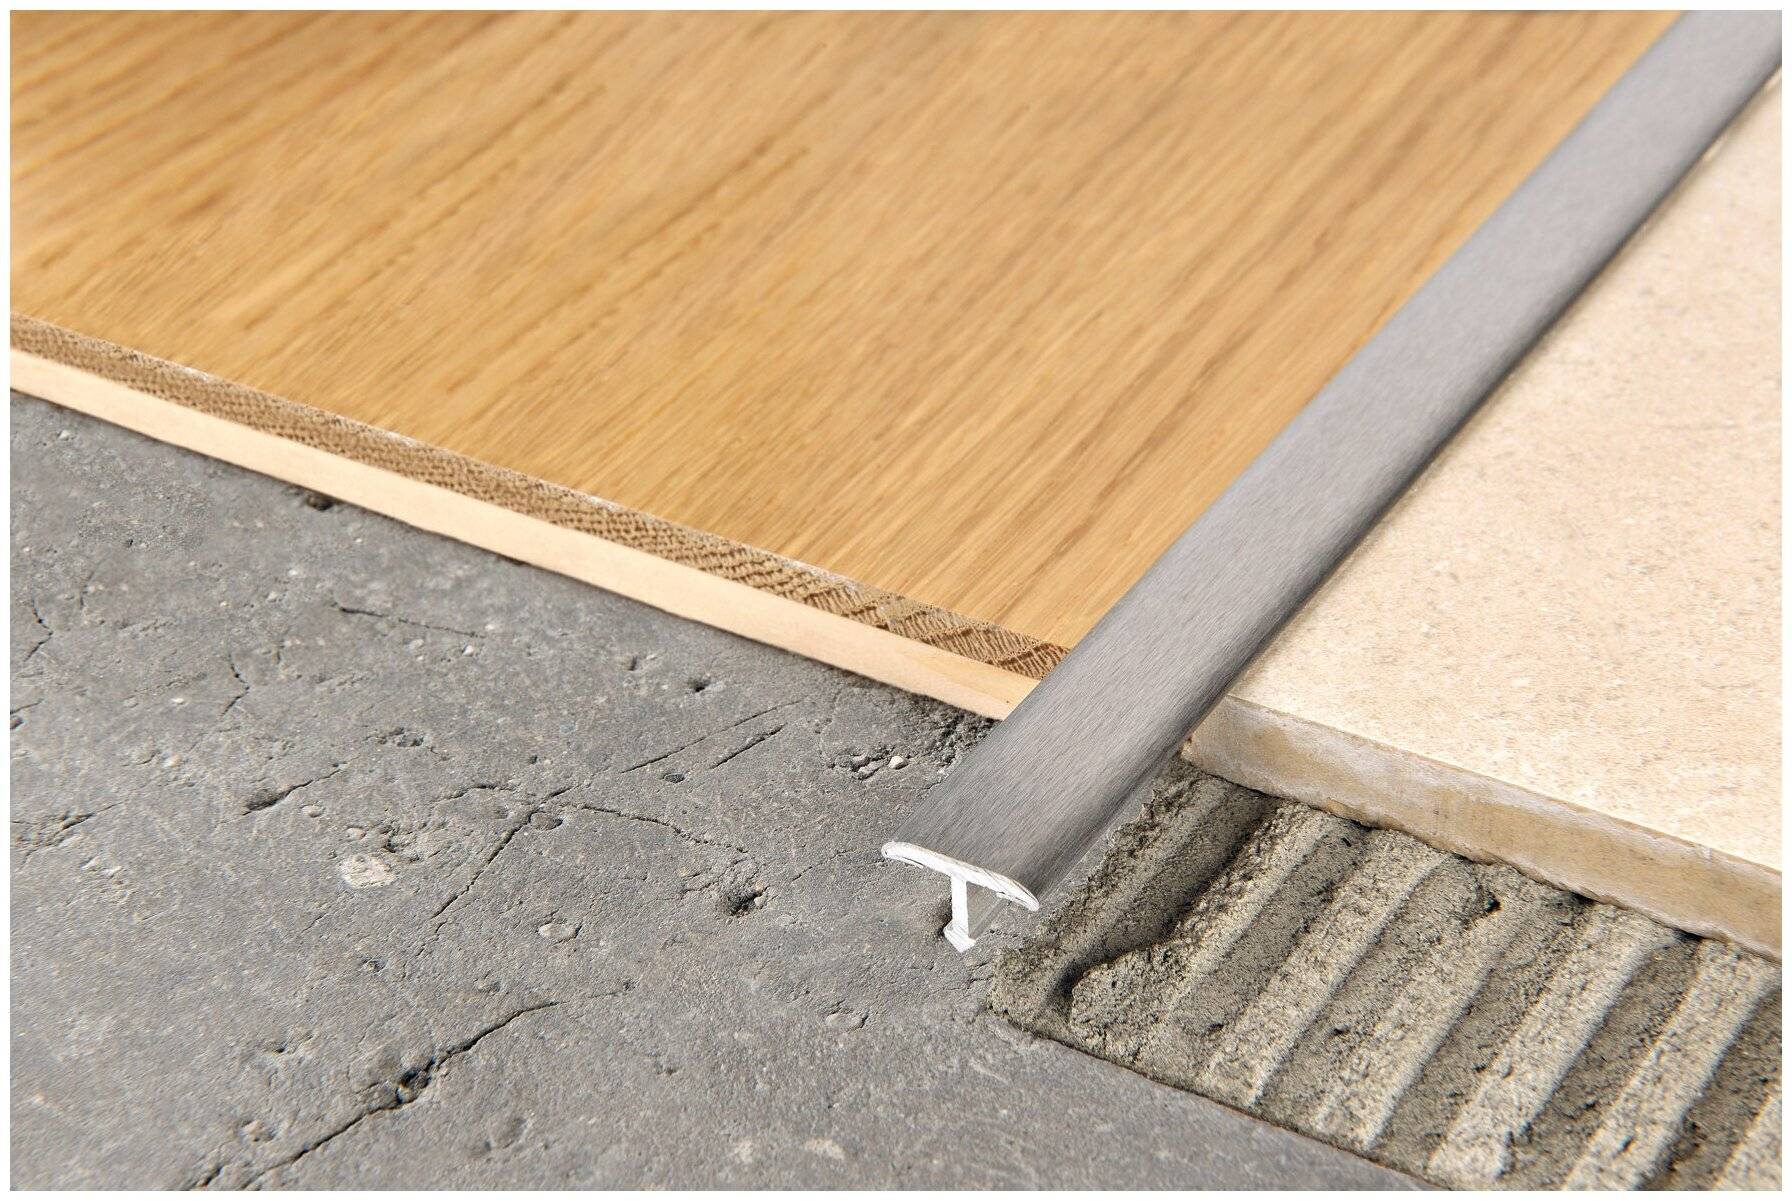 Как сделать правильной стык между плиткой и ламинатом?